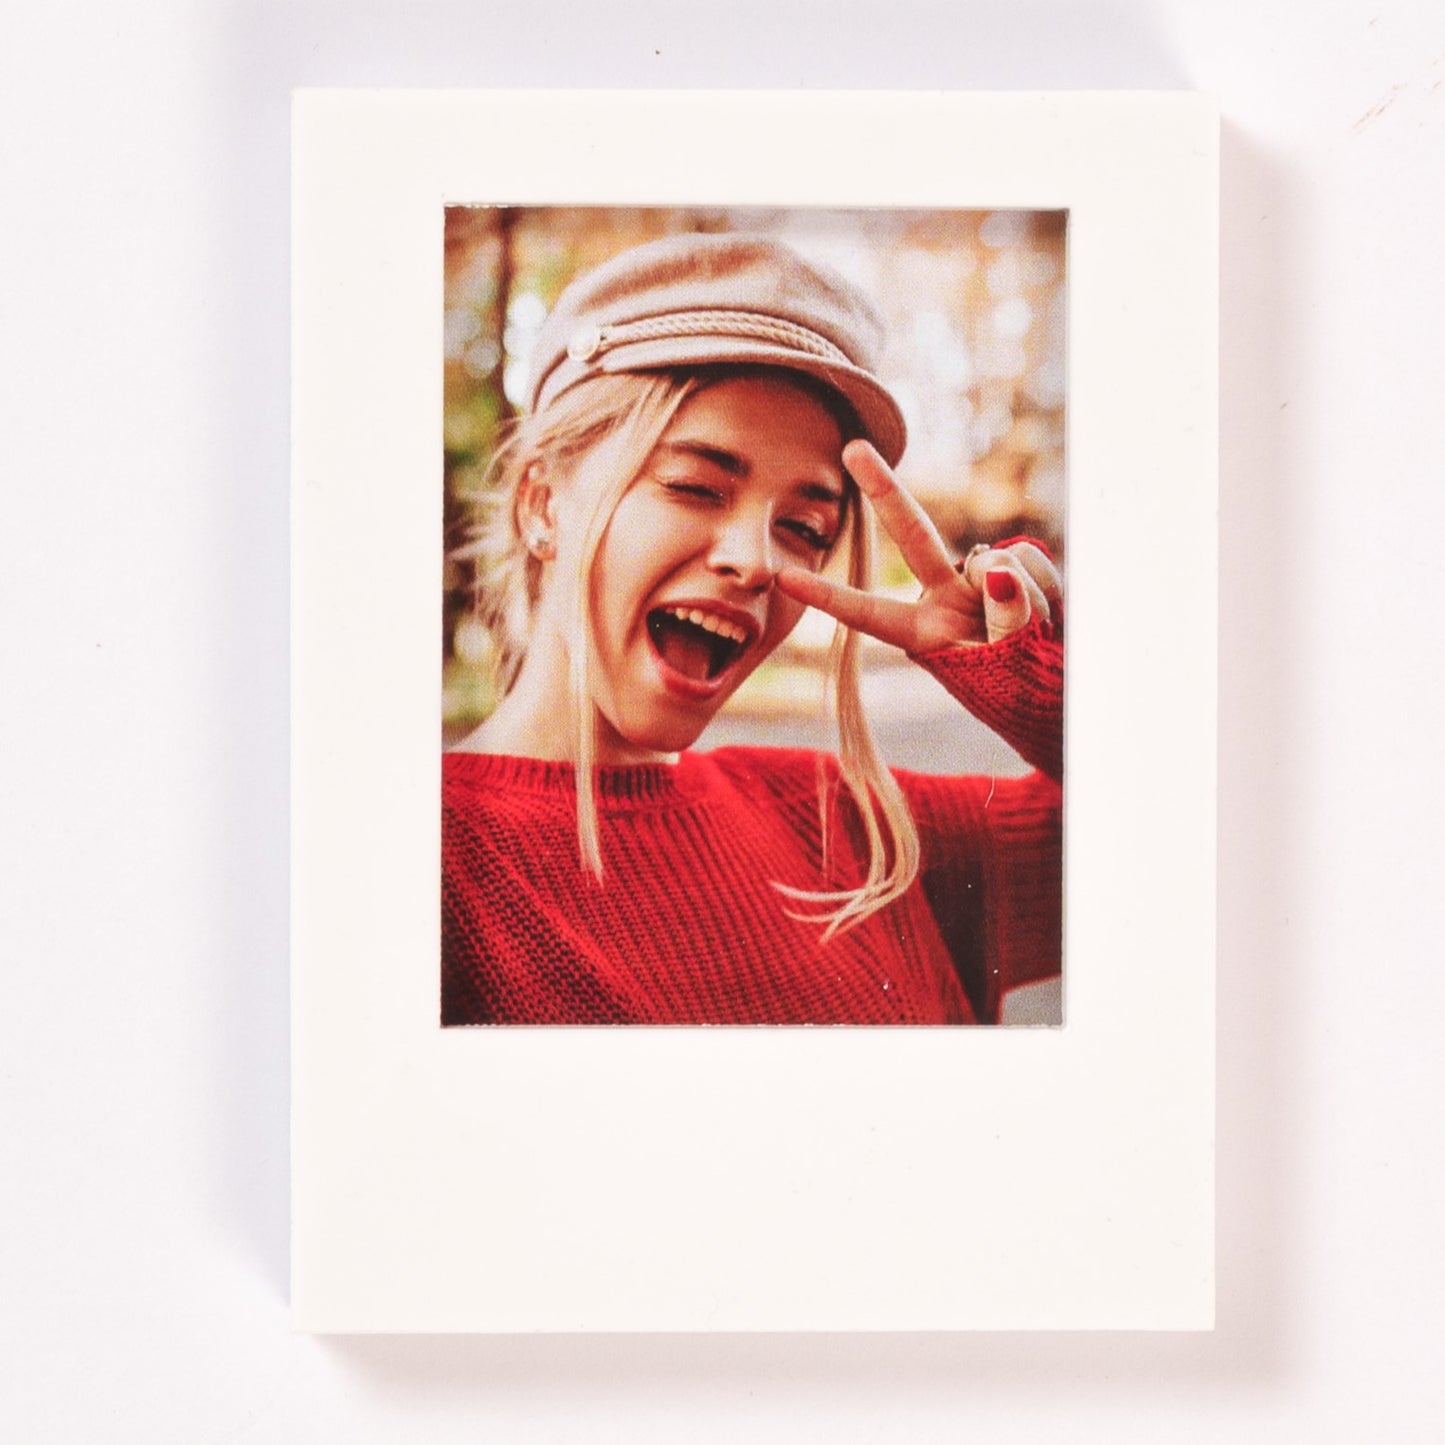 Acrylic Polaroid Personalized Fridge Magnet